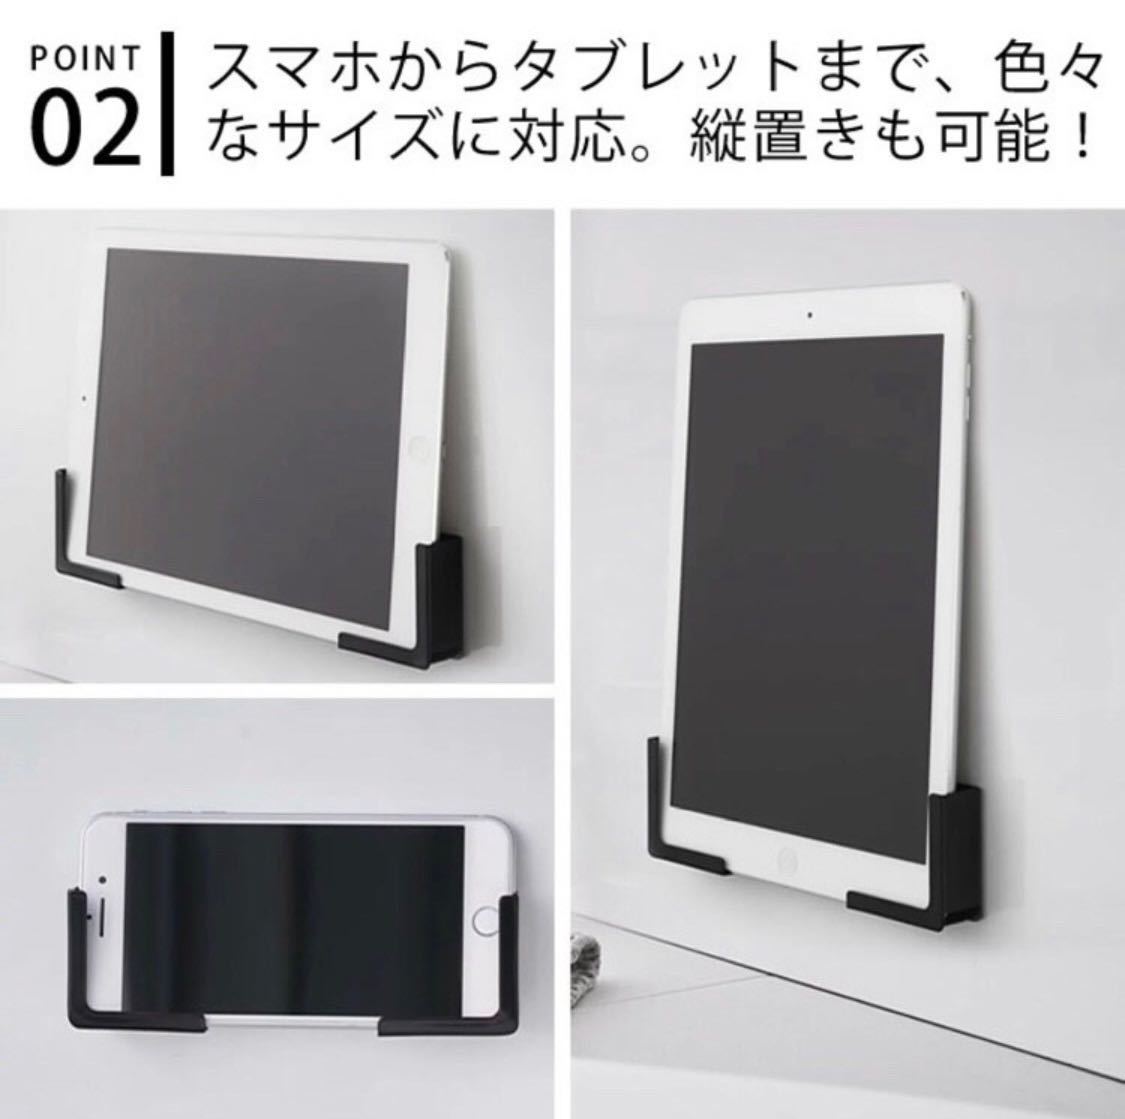 [ ограничение SALE] планшет держатель магнит ванна автобус салон черный кулинария кухня смартфон iPhone iPad